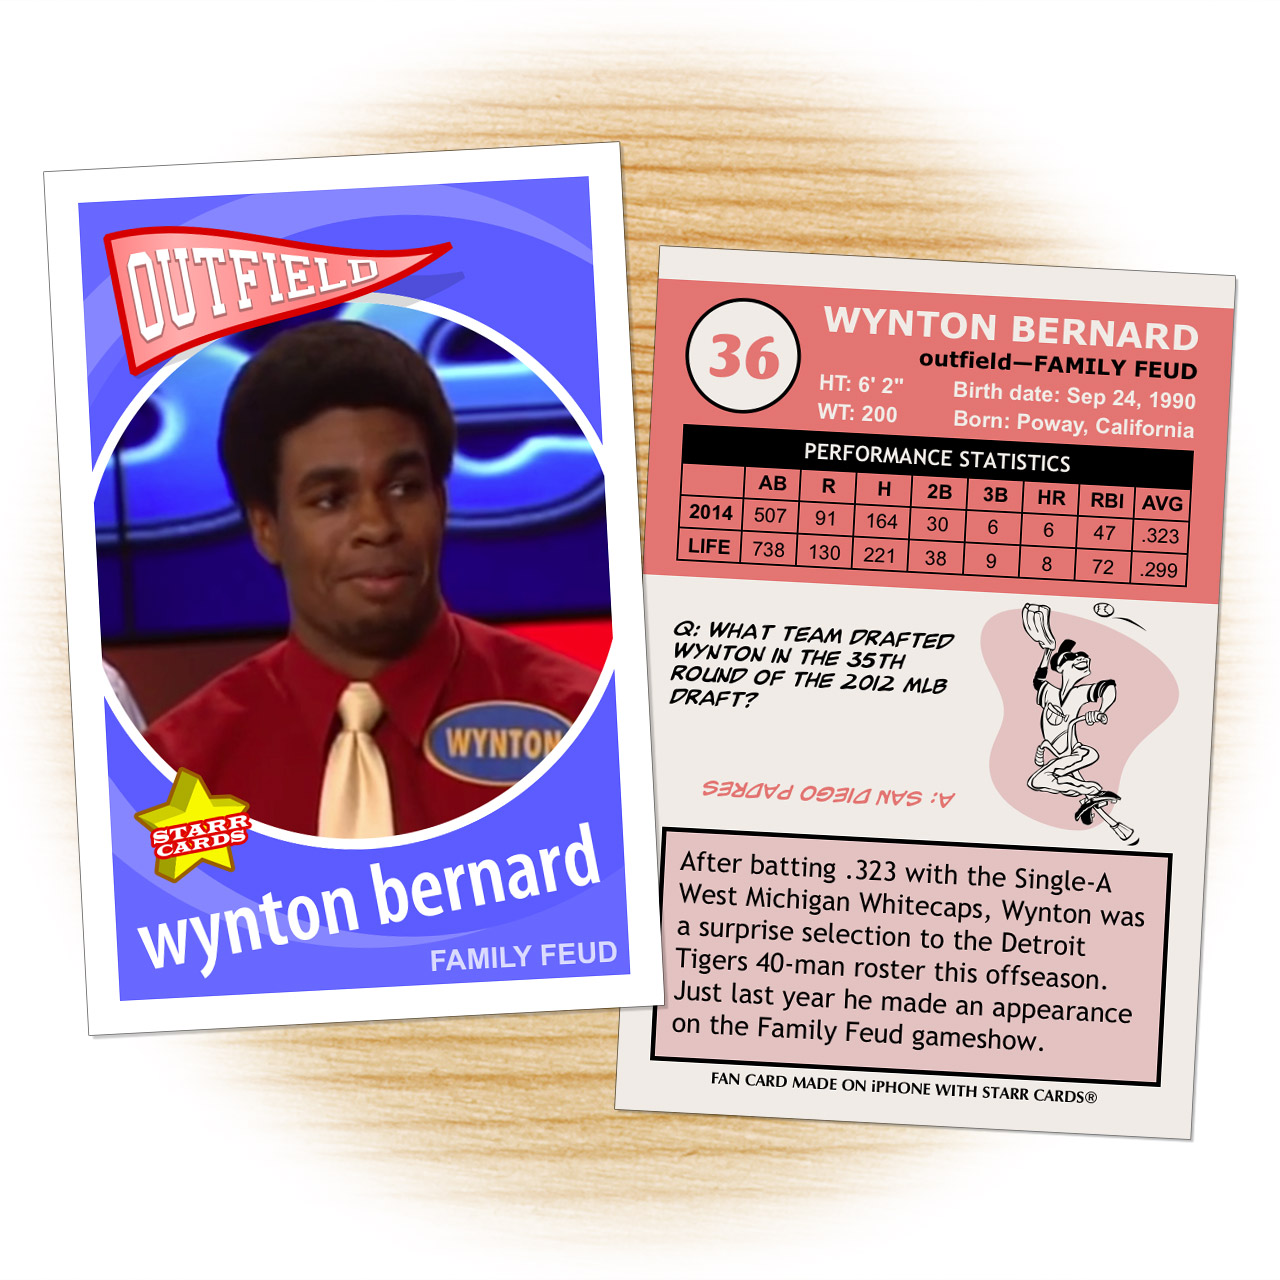 Detroit Tigers prospect Wynton Bernard on Family Feud